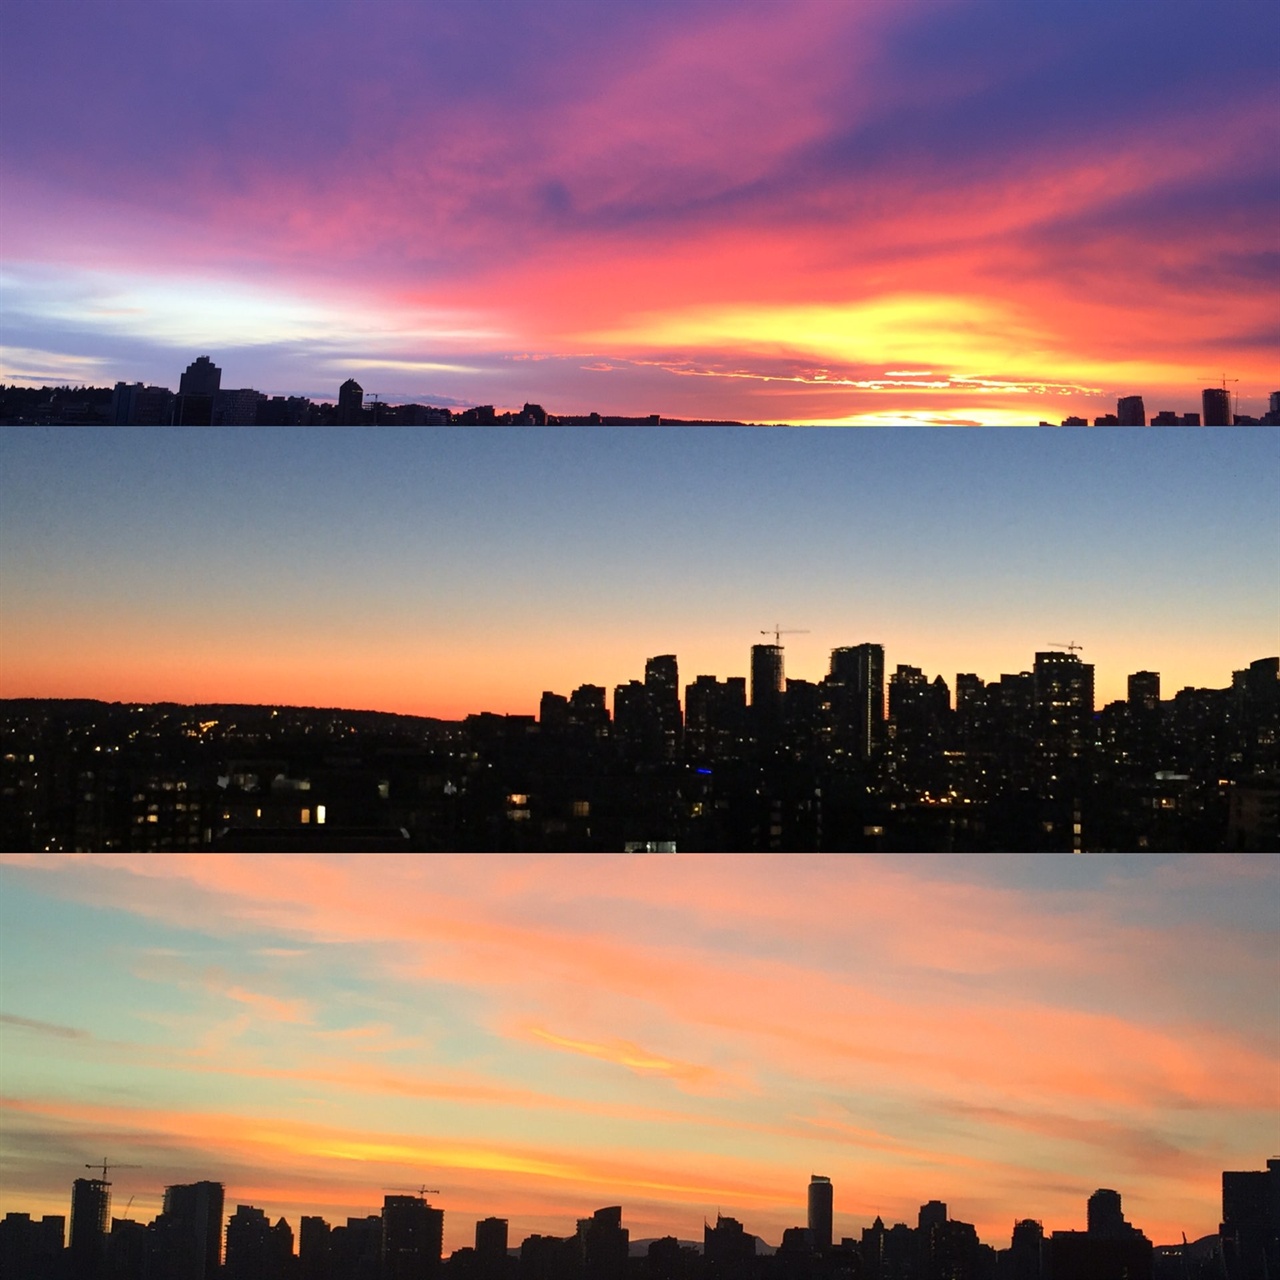 발코니에서 바라본 밴쿠버의 석양. 맑은 하늘은 매일 달라지는 빛의 다채로움을 느끼게 해준다. 